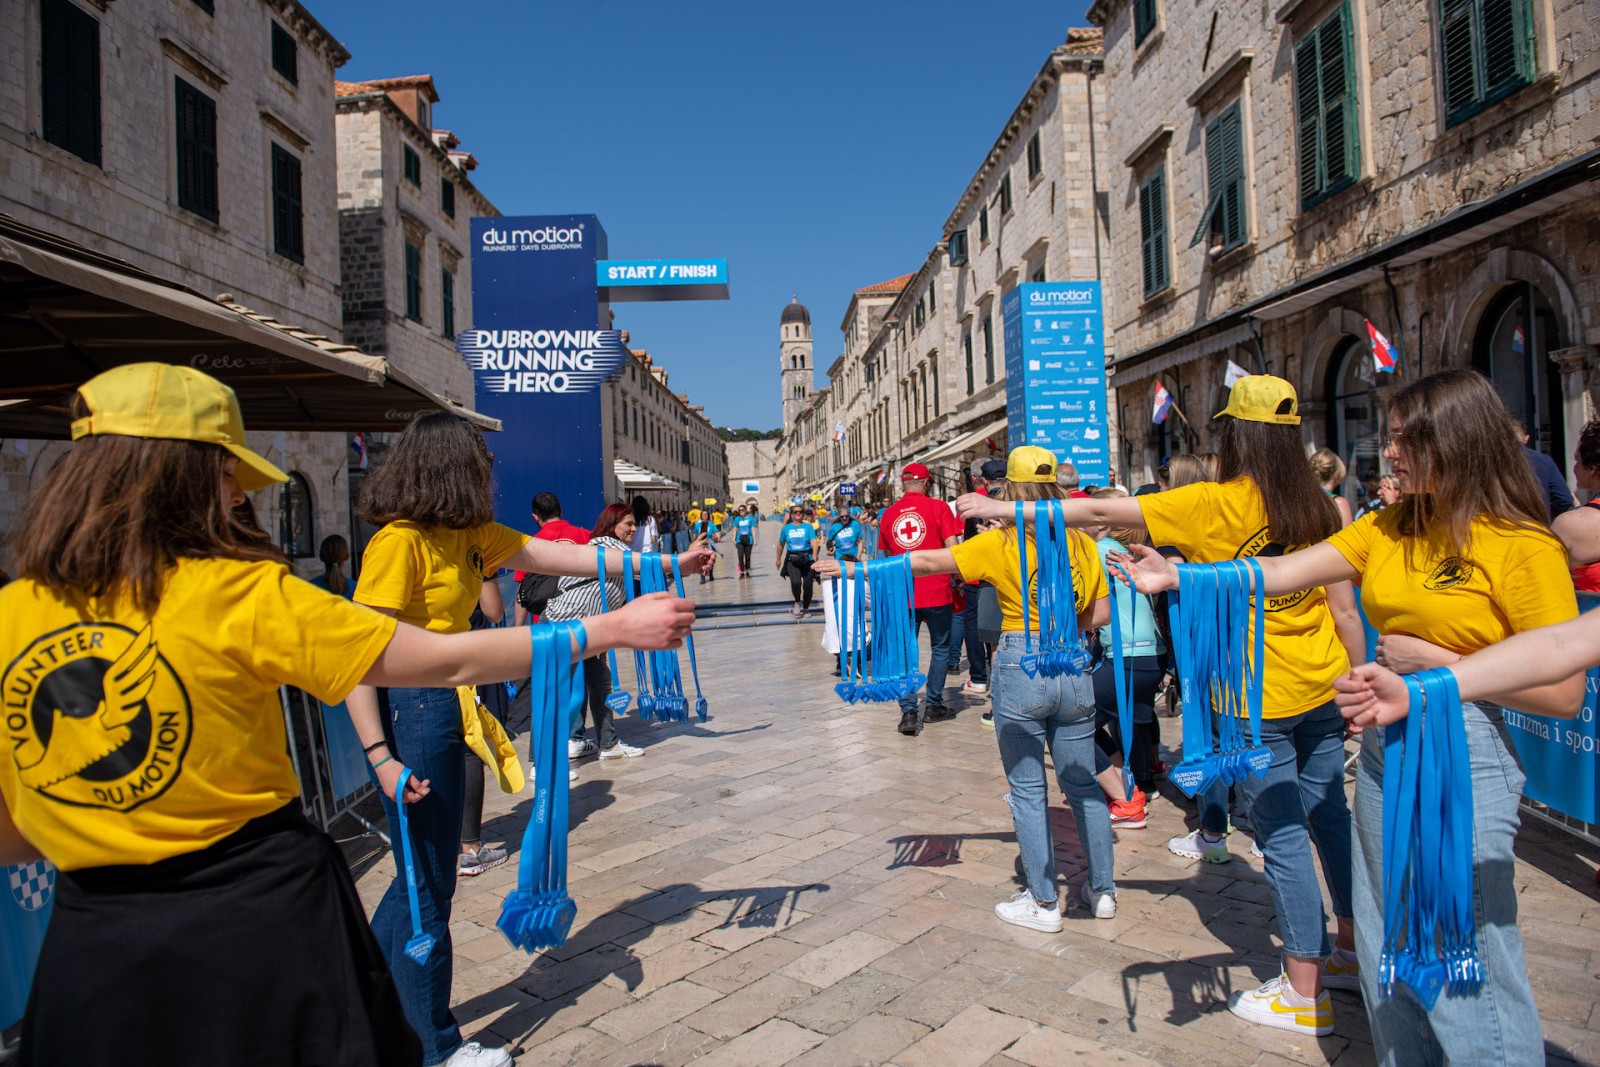 Du motion traži volontere: Budite dijelom velike dubrovačke trkačke priče